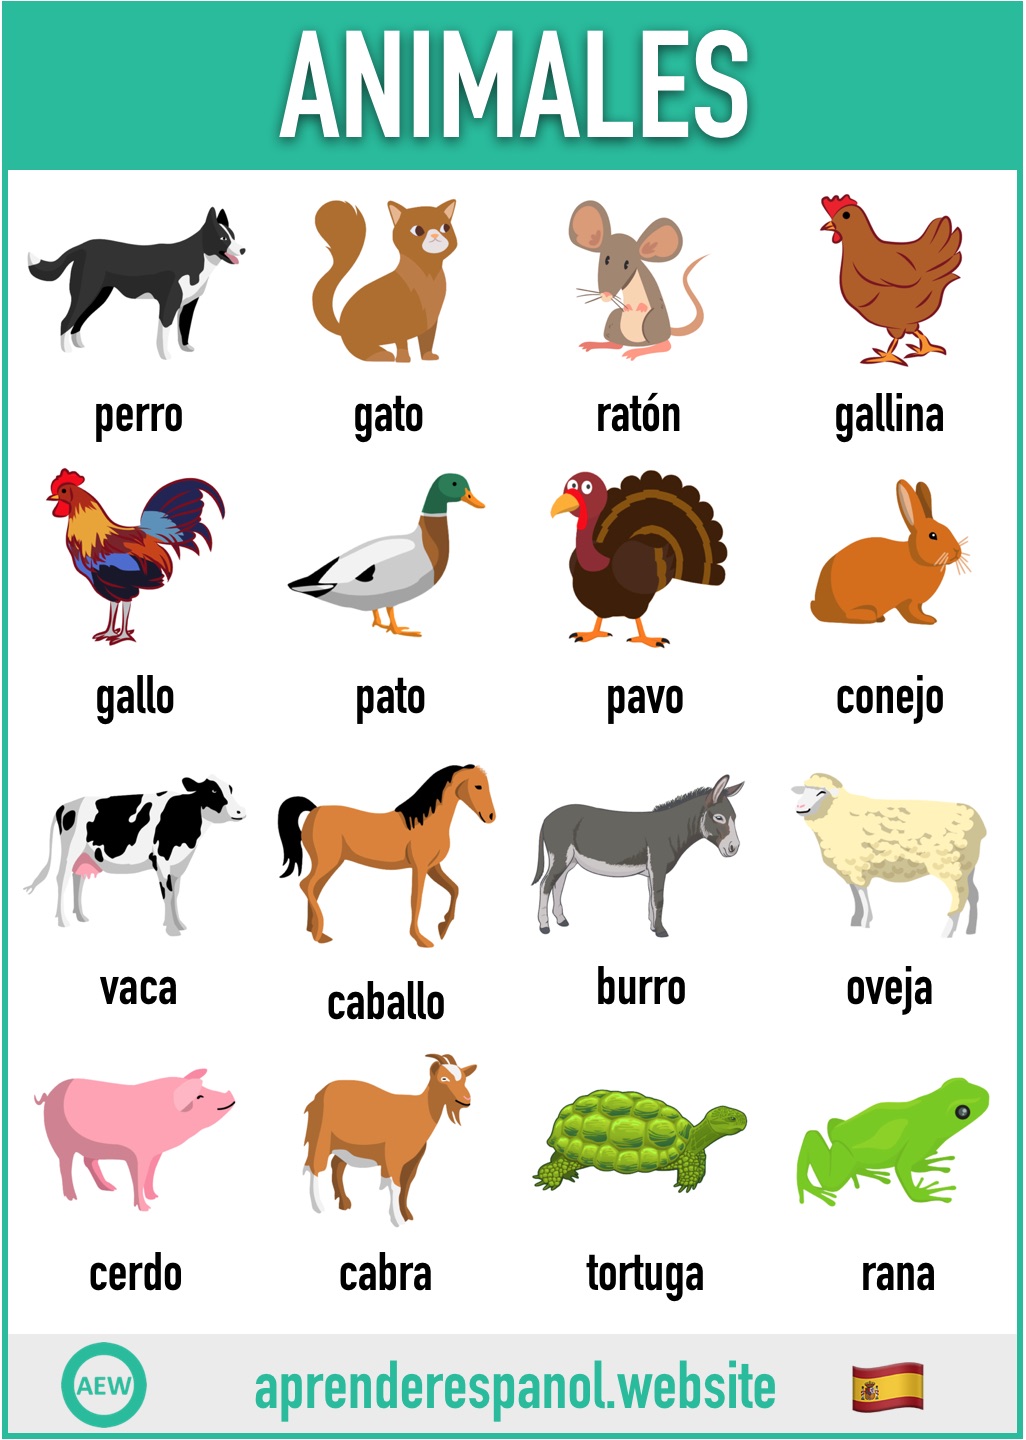 animales en español - vocabulario de los animales en español - aprender español website